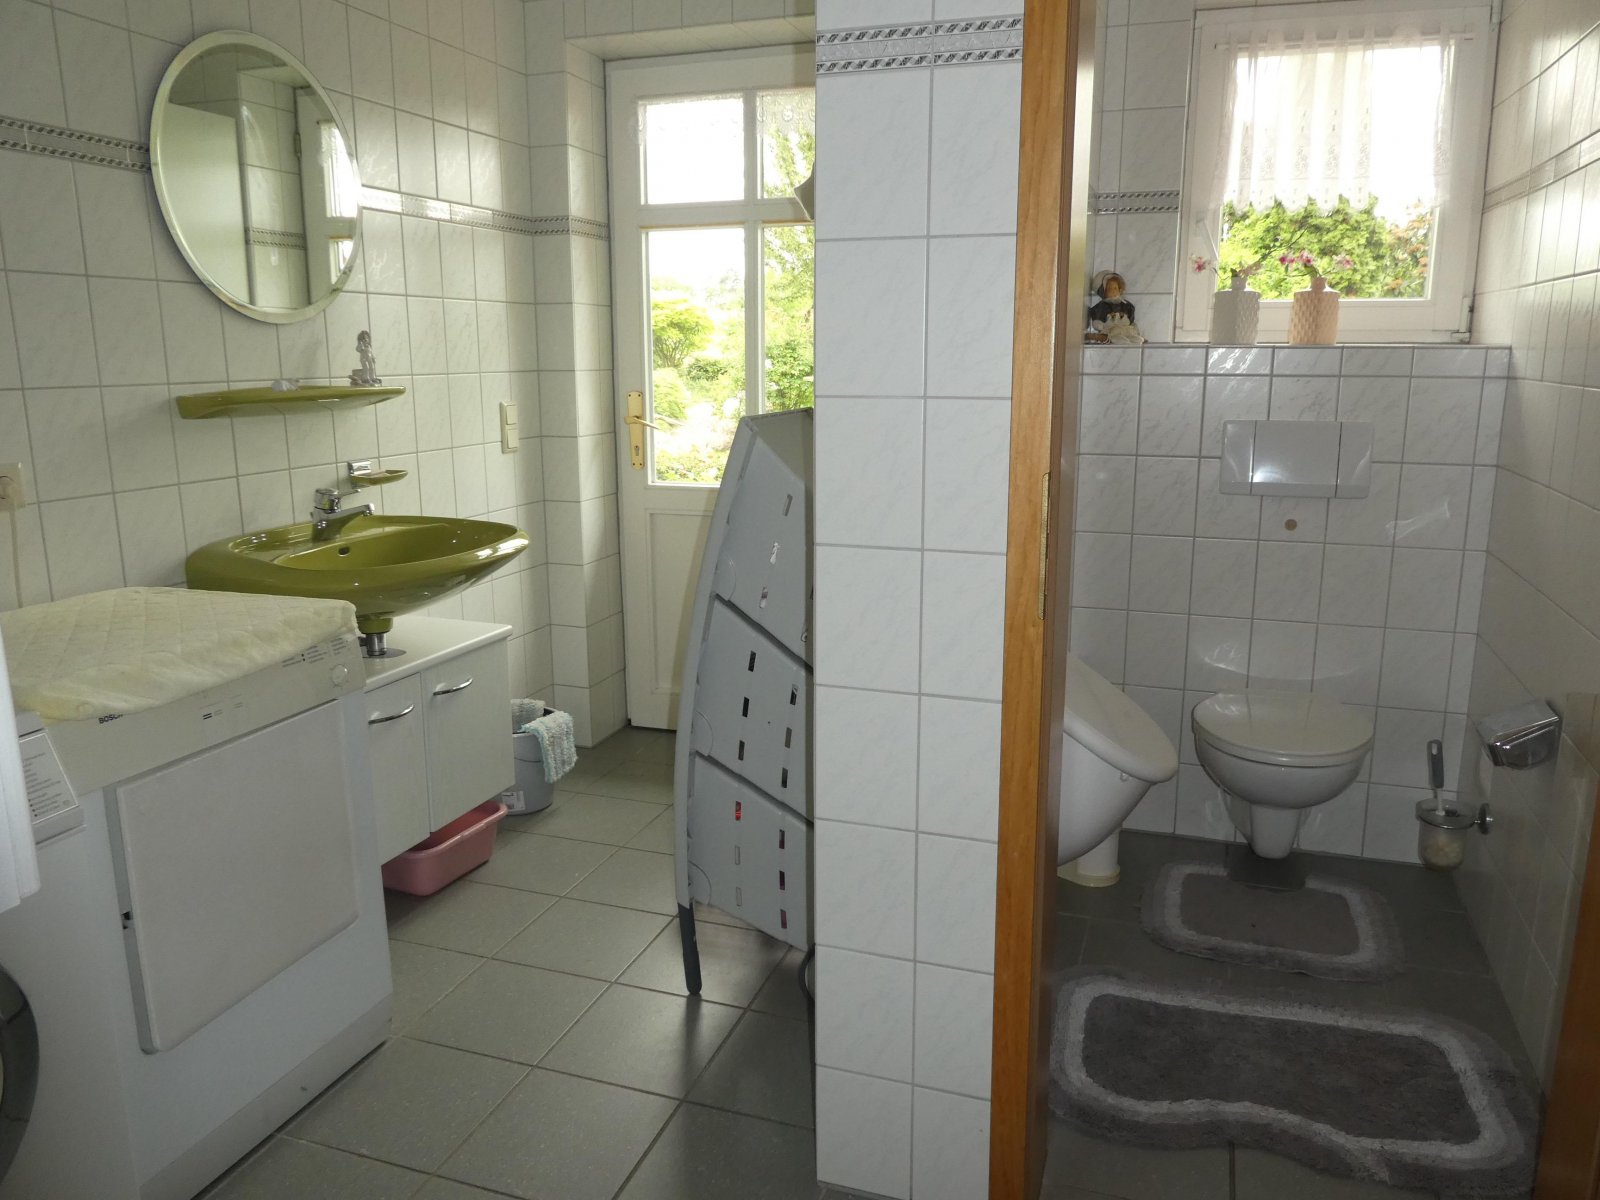 Hauswirtschaftraum/Gäste-WC